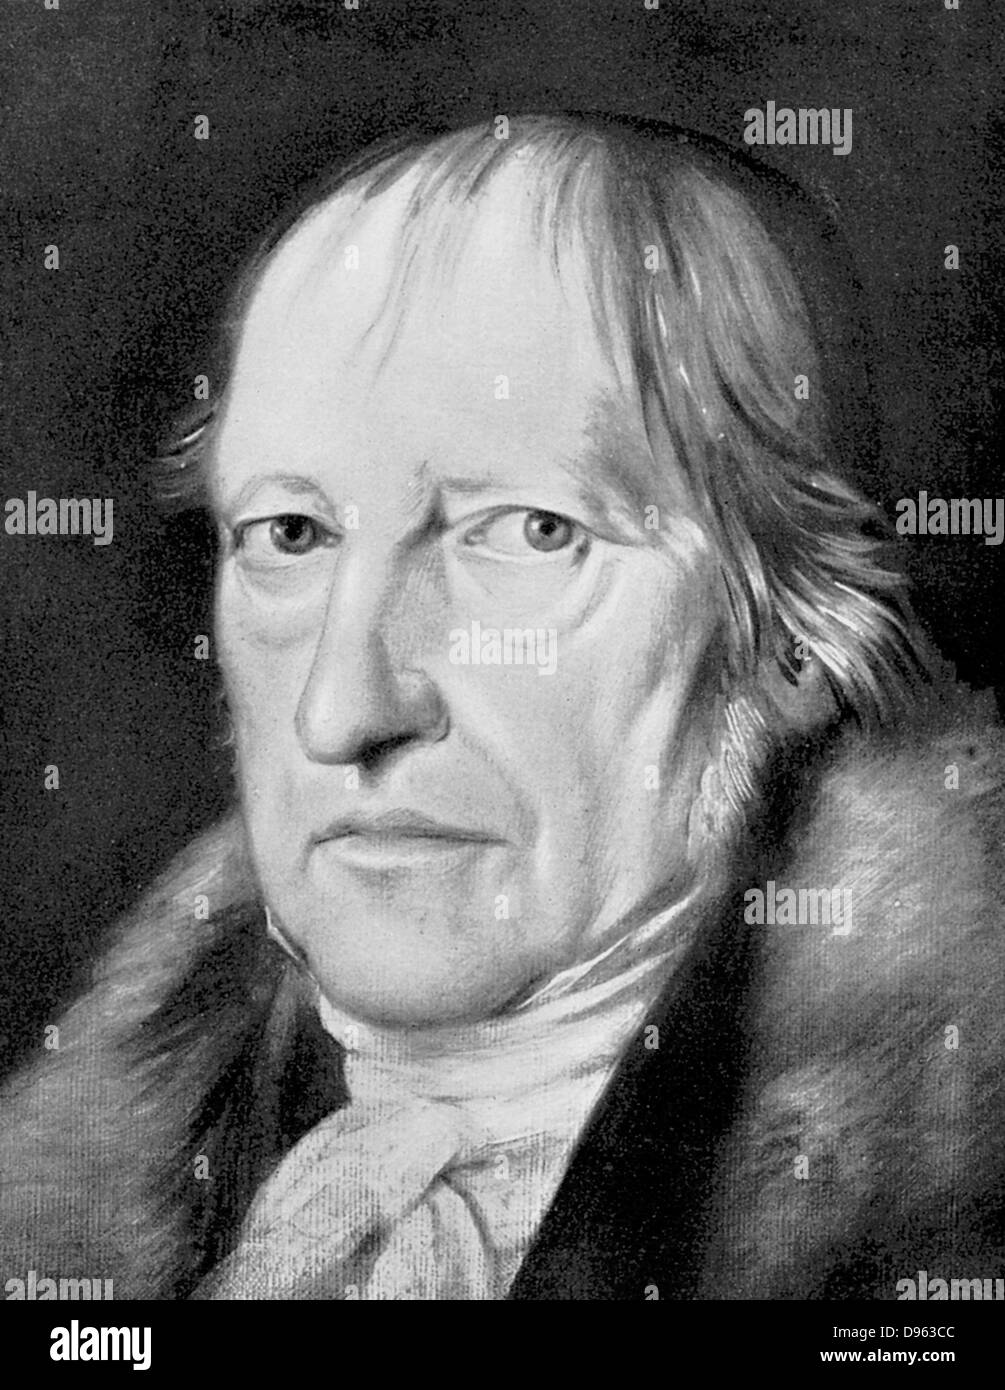 George Wilhlem Friedrich Hegel (1770-1831) Tedesco filosofo idealista. La sua filosofia difficile, considerato da molti oscuri, ha avuto un grande influsso sulla marxisti positivisti Existentialists e. Foto Stock